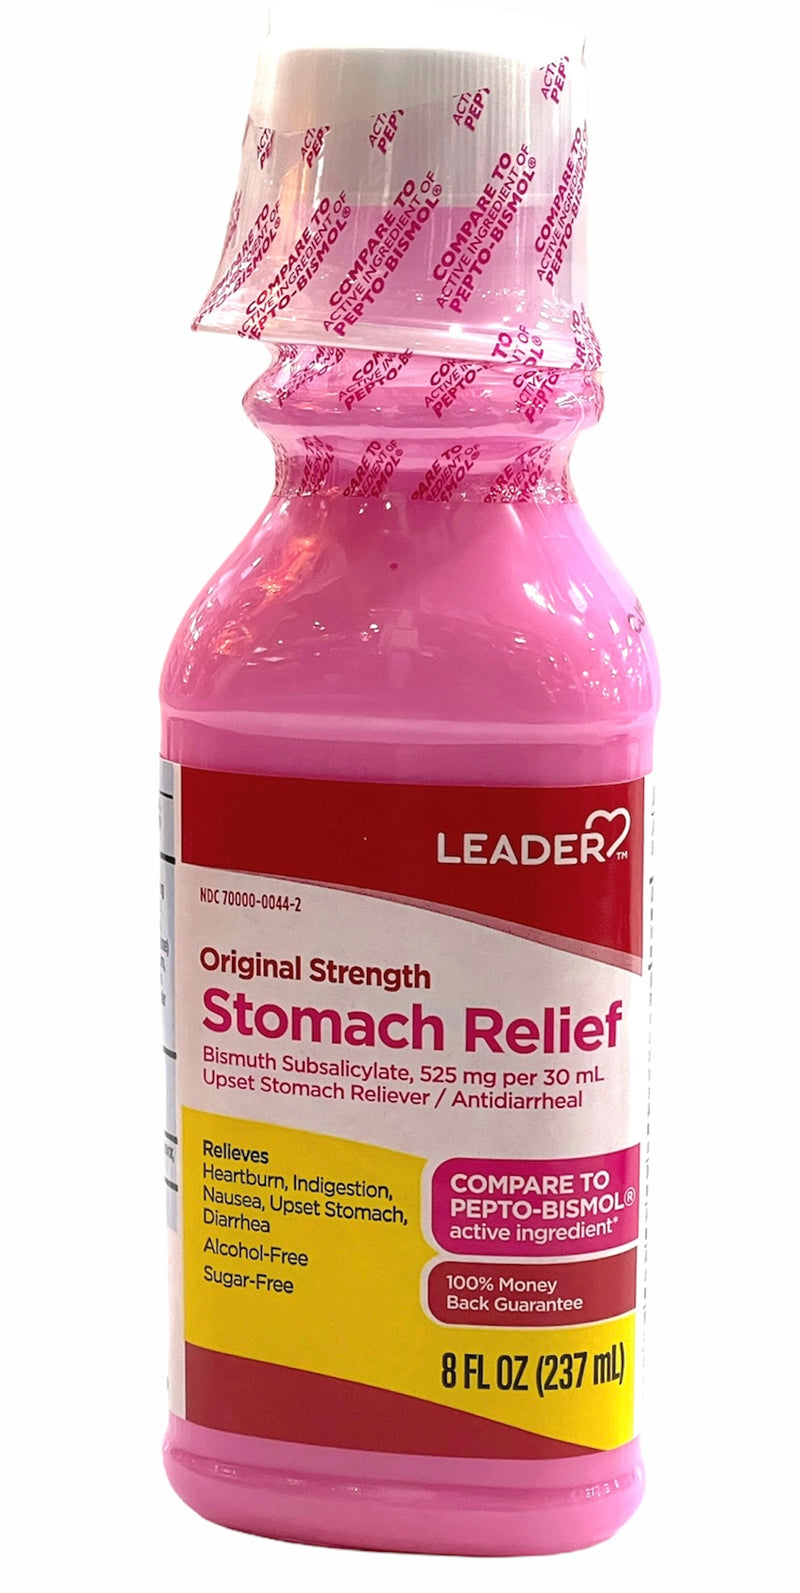 Stomach Relief | Original Strength | 8FL